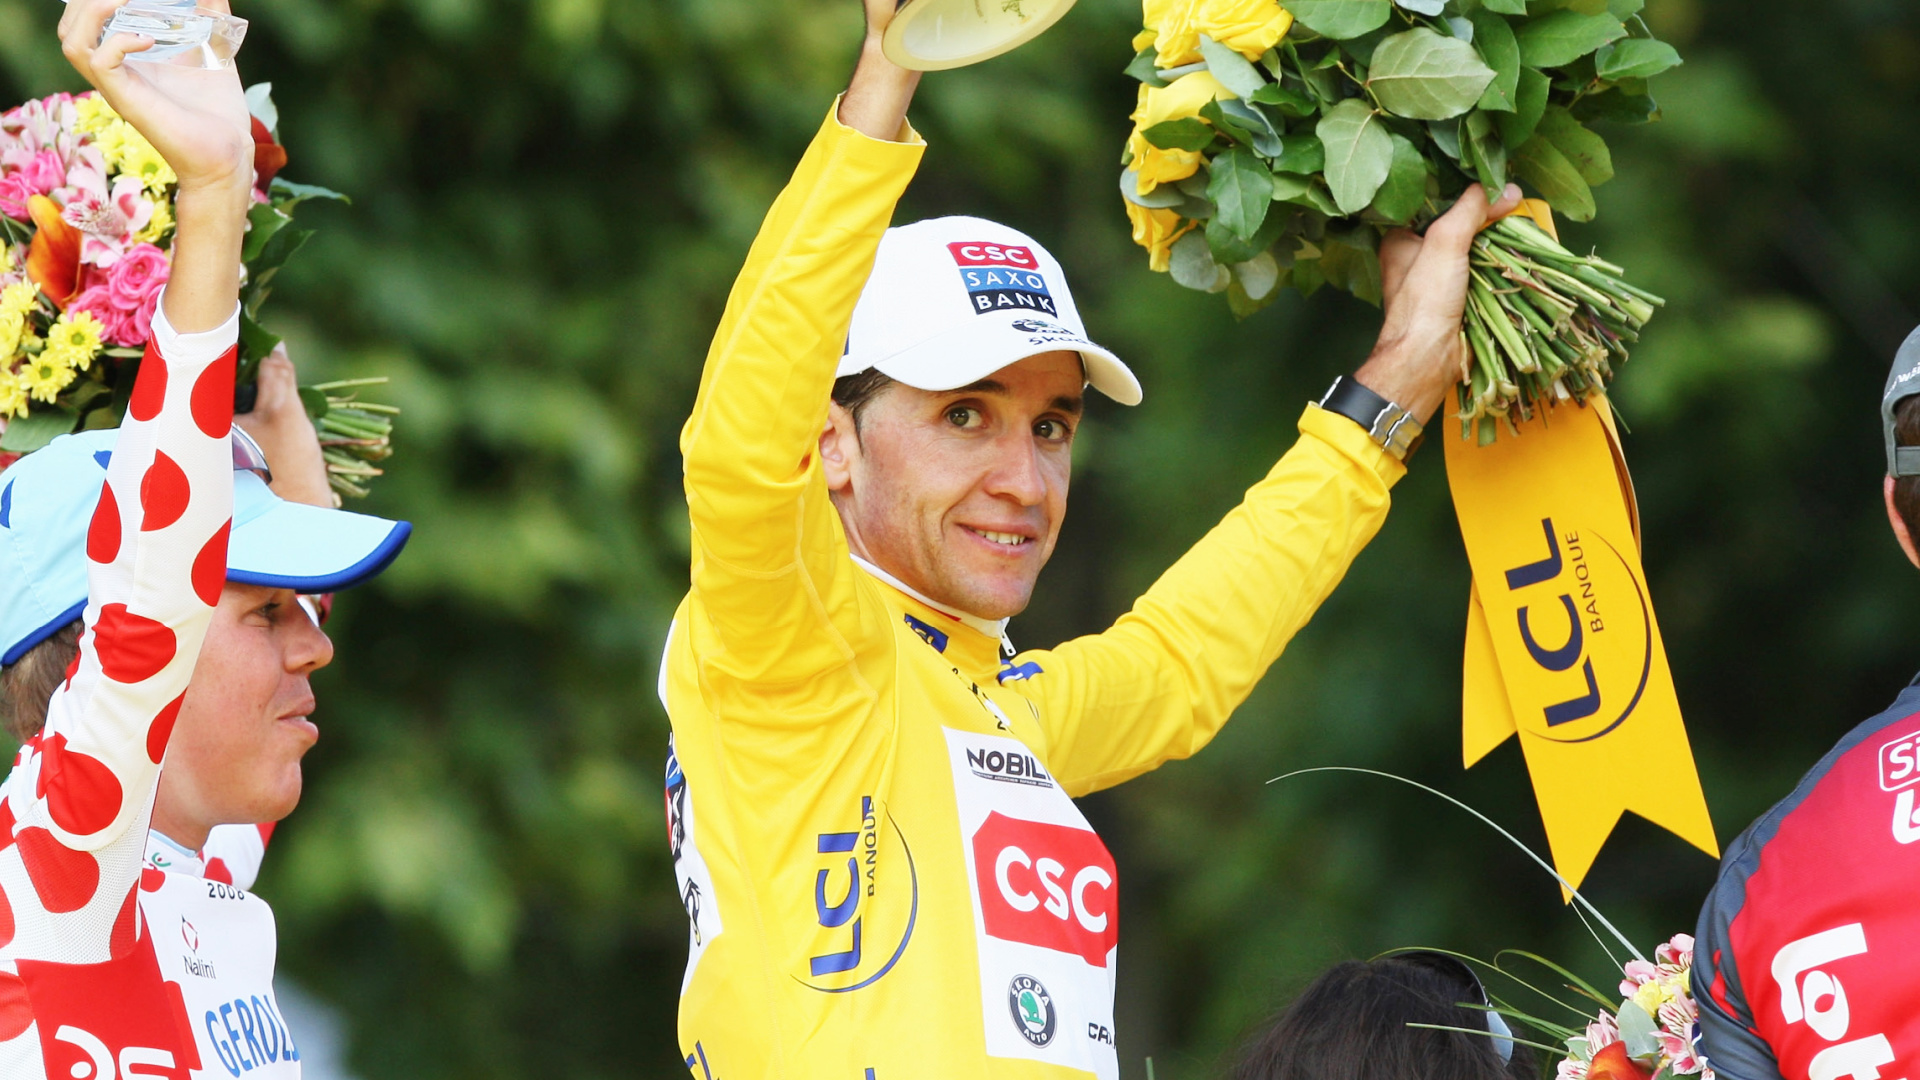 Qu'est devenu Carlos Sastre, le vainqueur inattendu du Tour de France 2008 ?